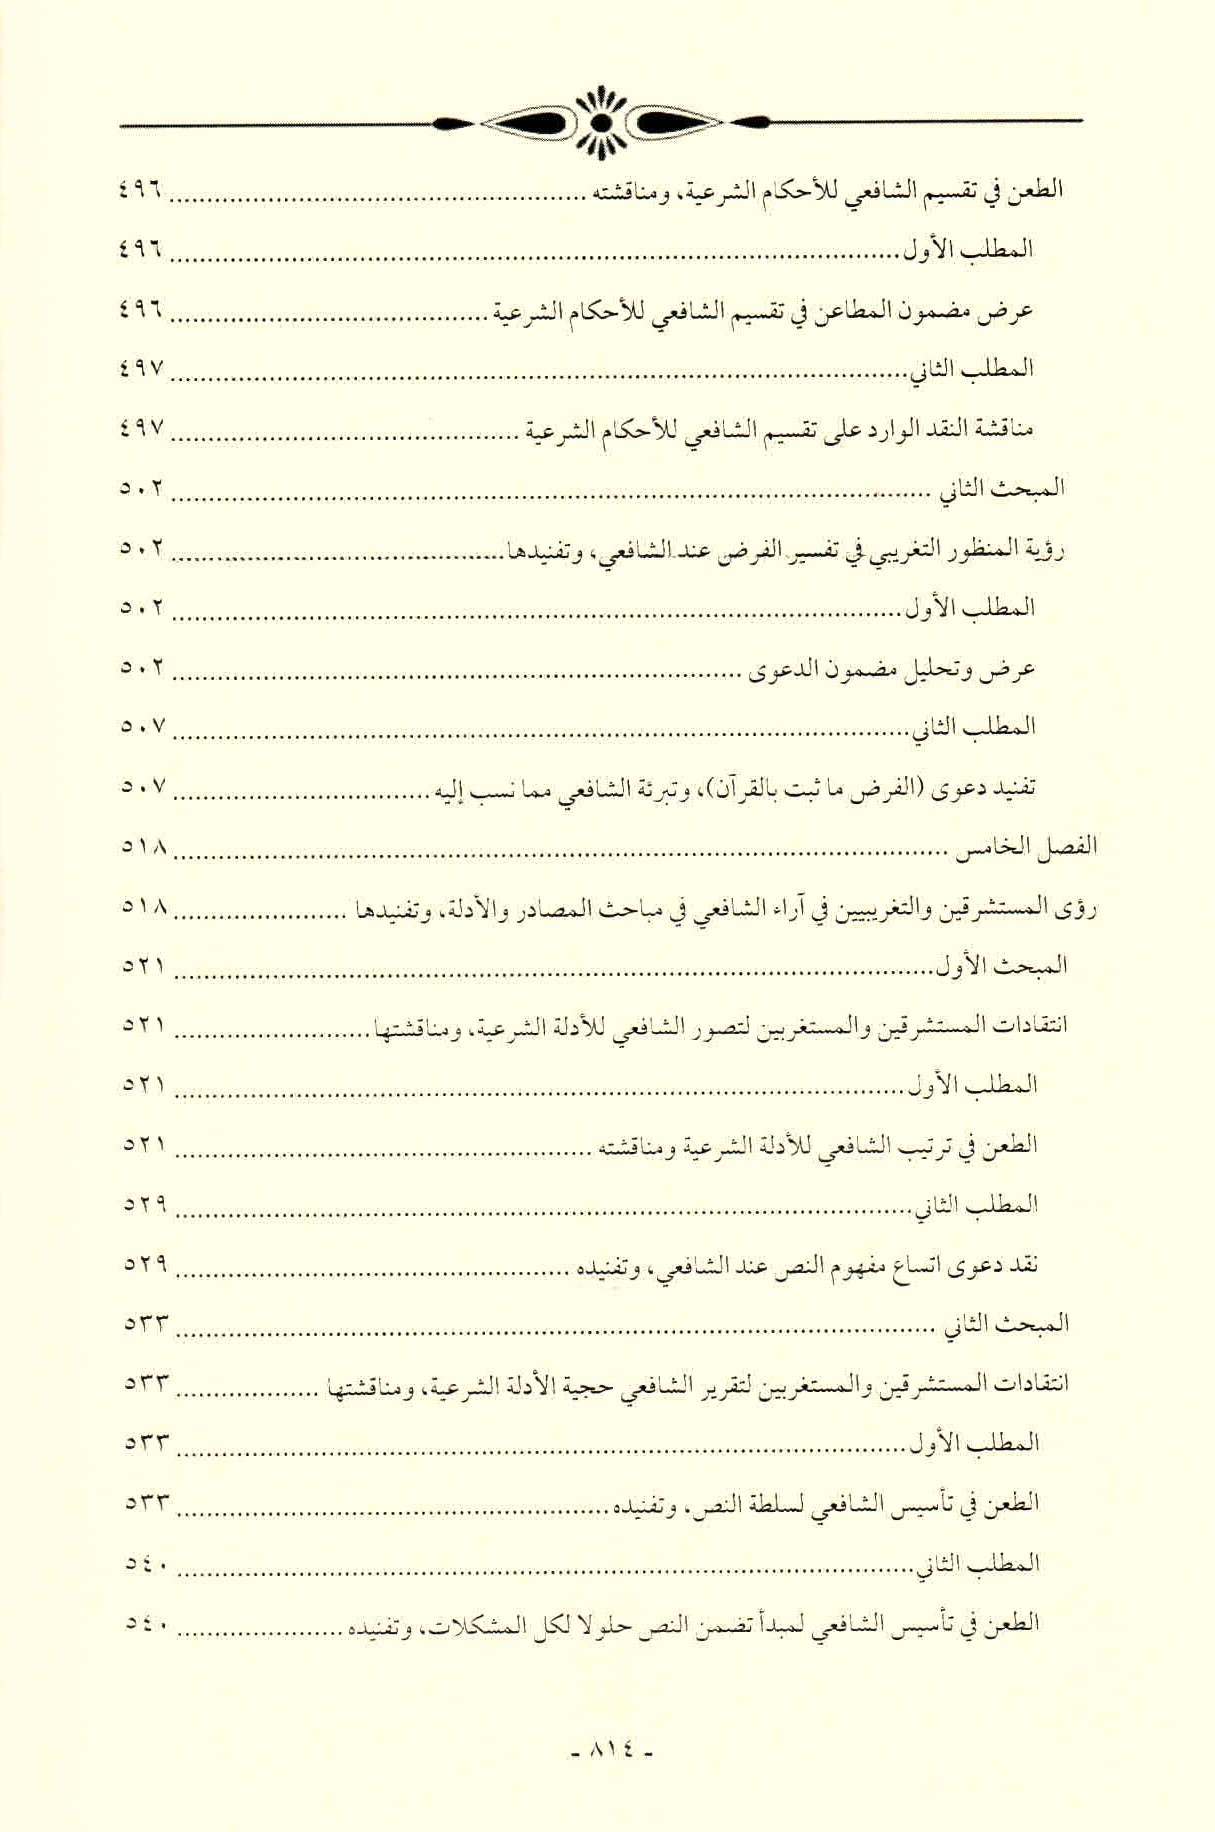 قائمة محتويات كتاب افتراءات المستشرقين والحداثيين على أصول الشريعة وأئمتها للدكتور هاني محمود ص. 814